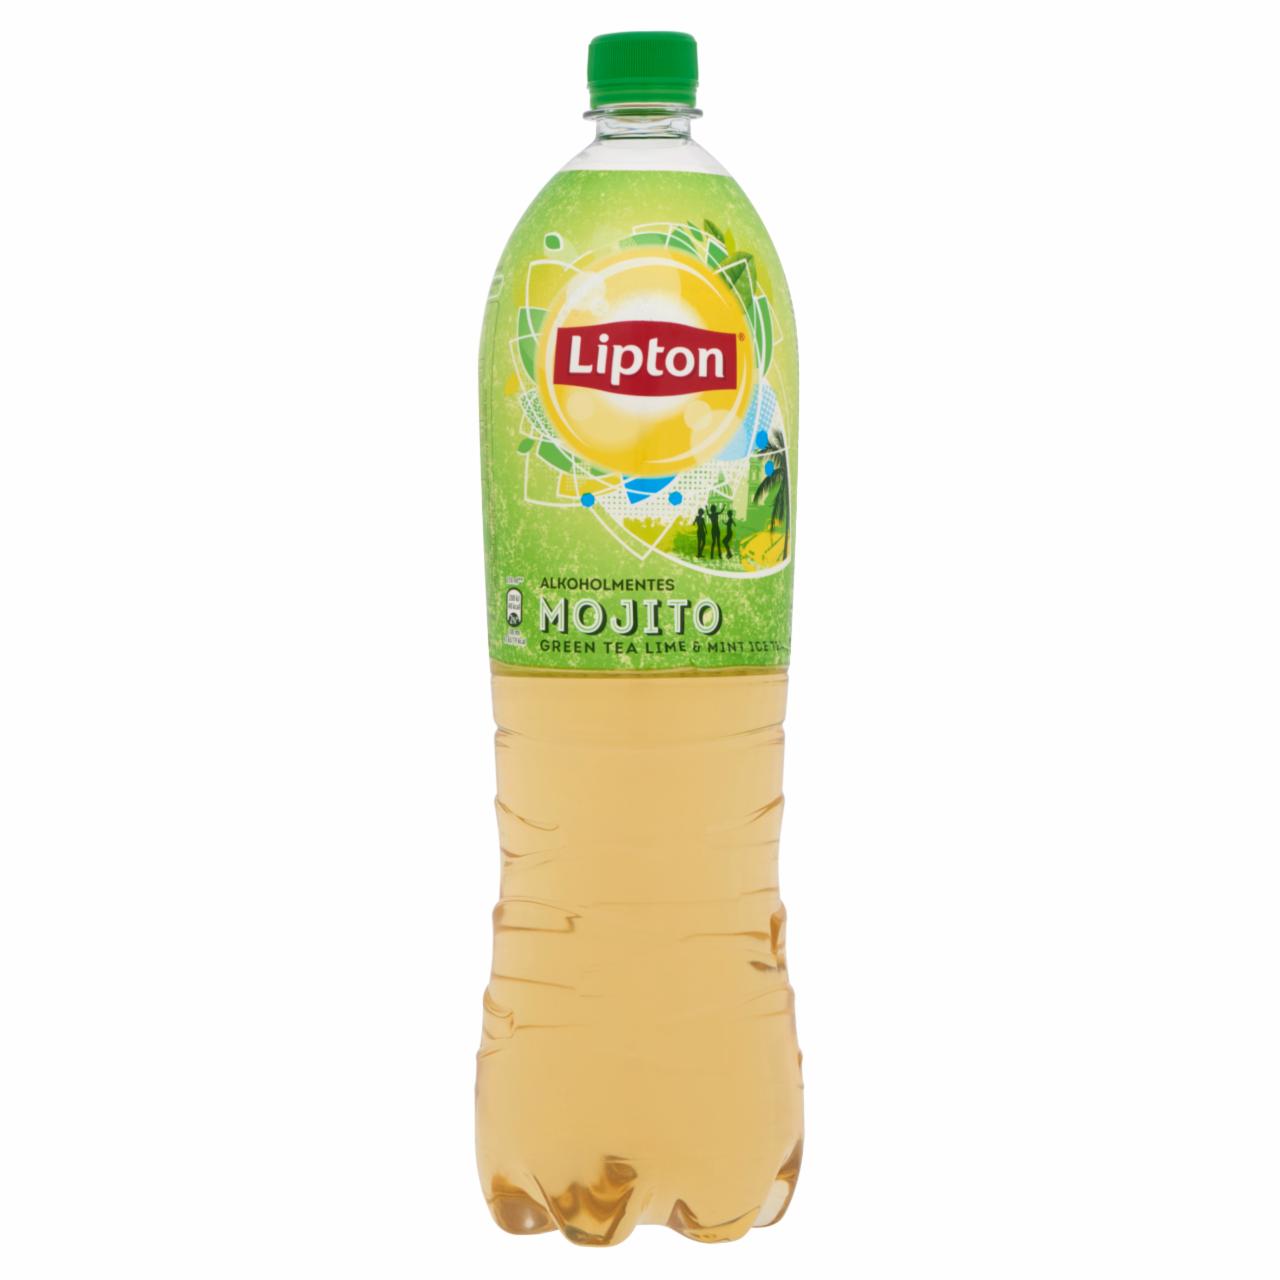 Képek - Lipton Green Tea Mojito alkoholmentes citrom-menta ízű szénsavmentes üdítőital 1,5 l